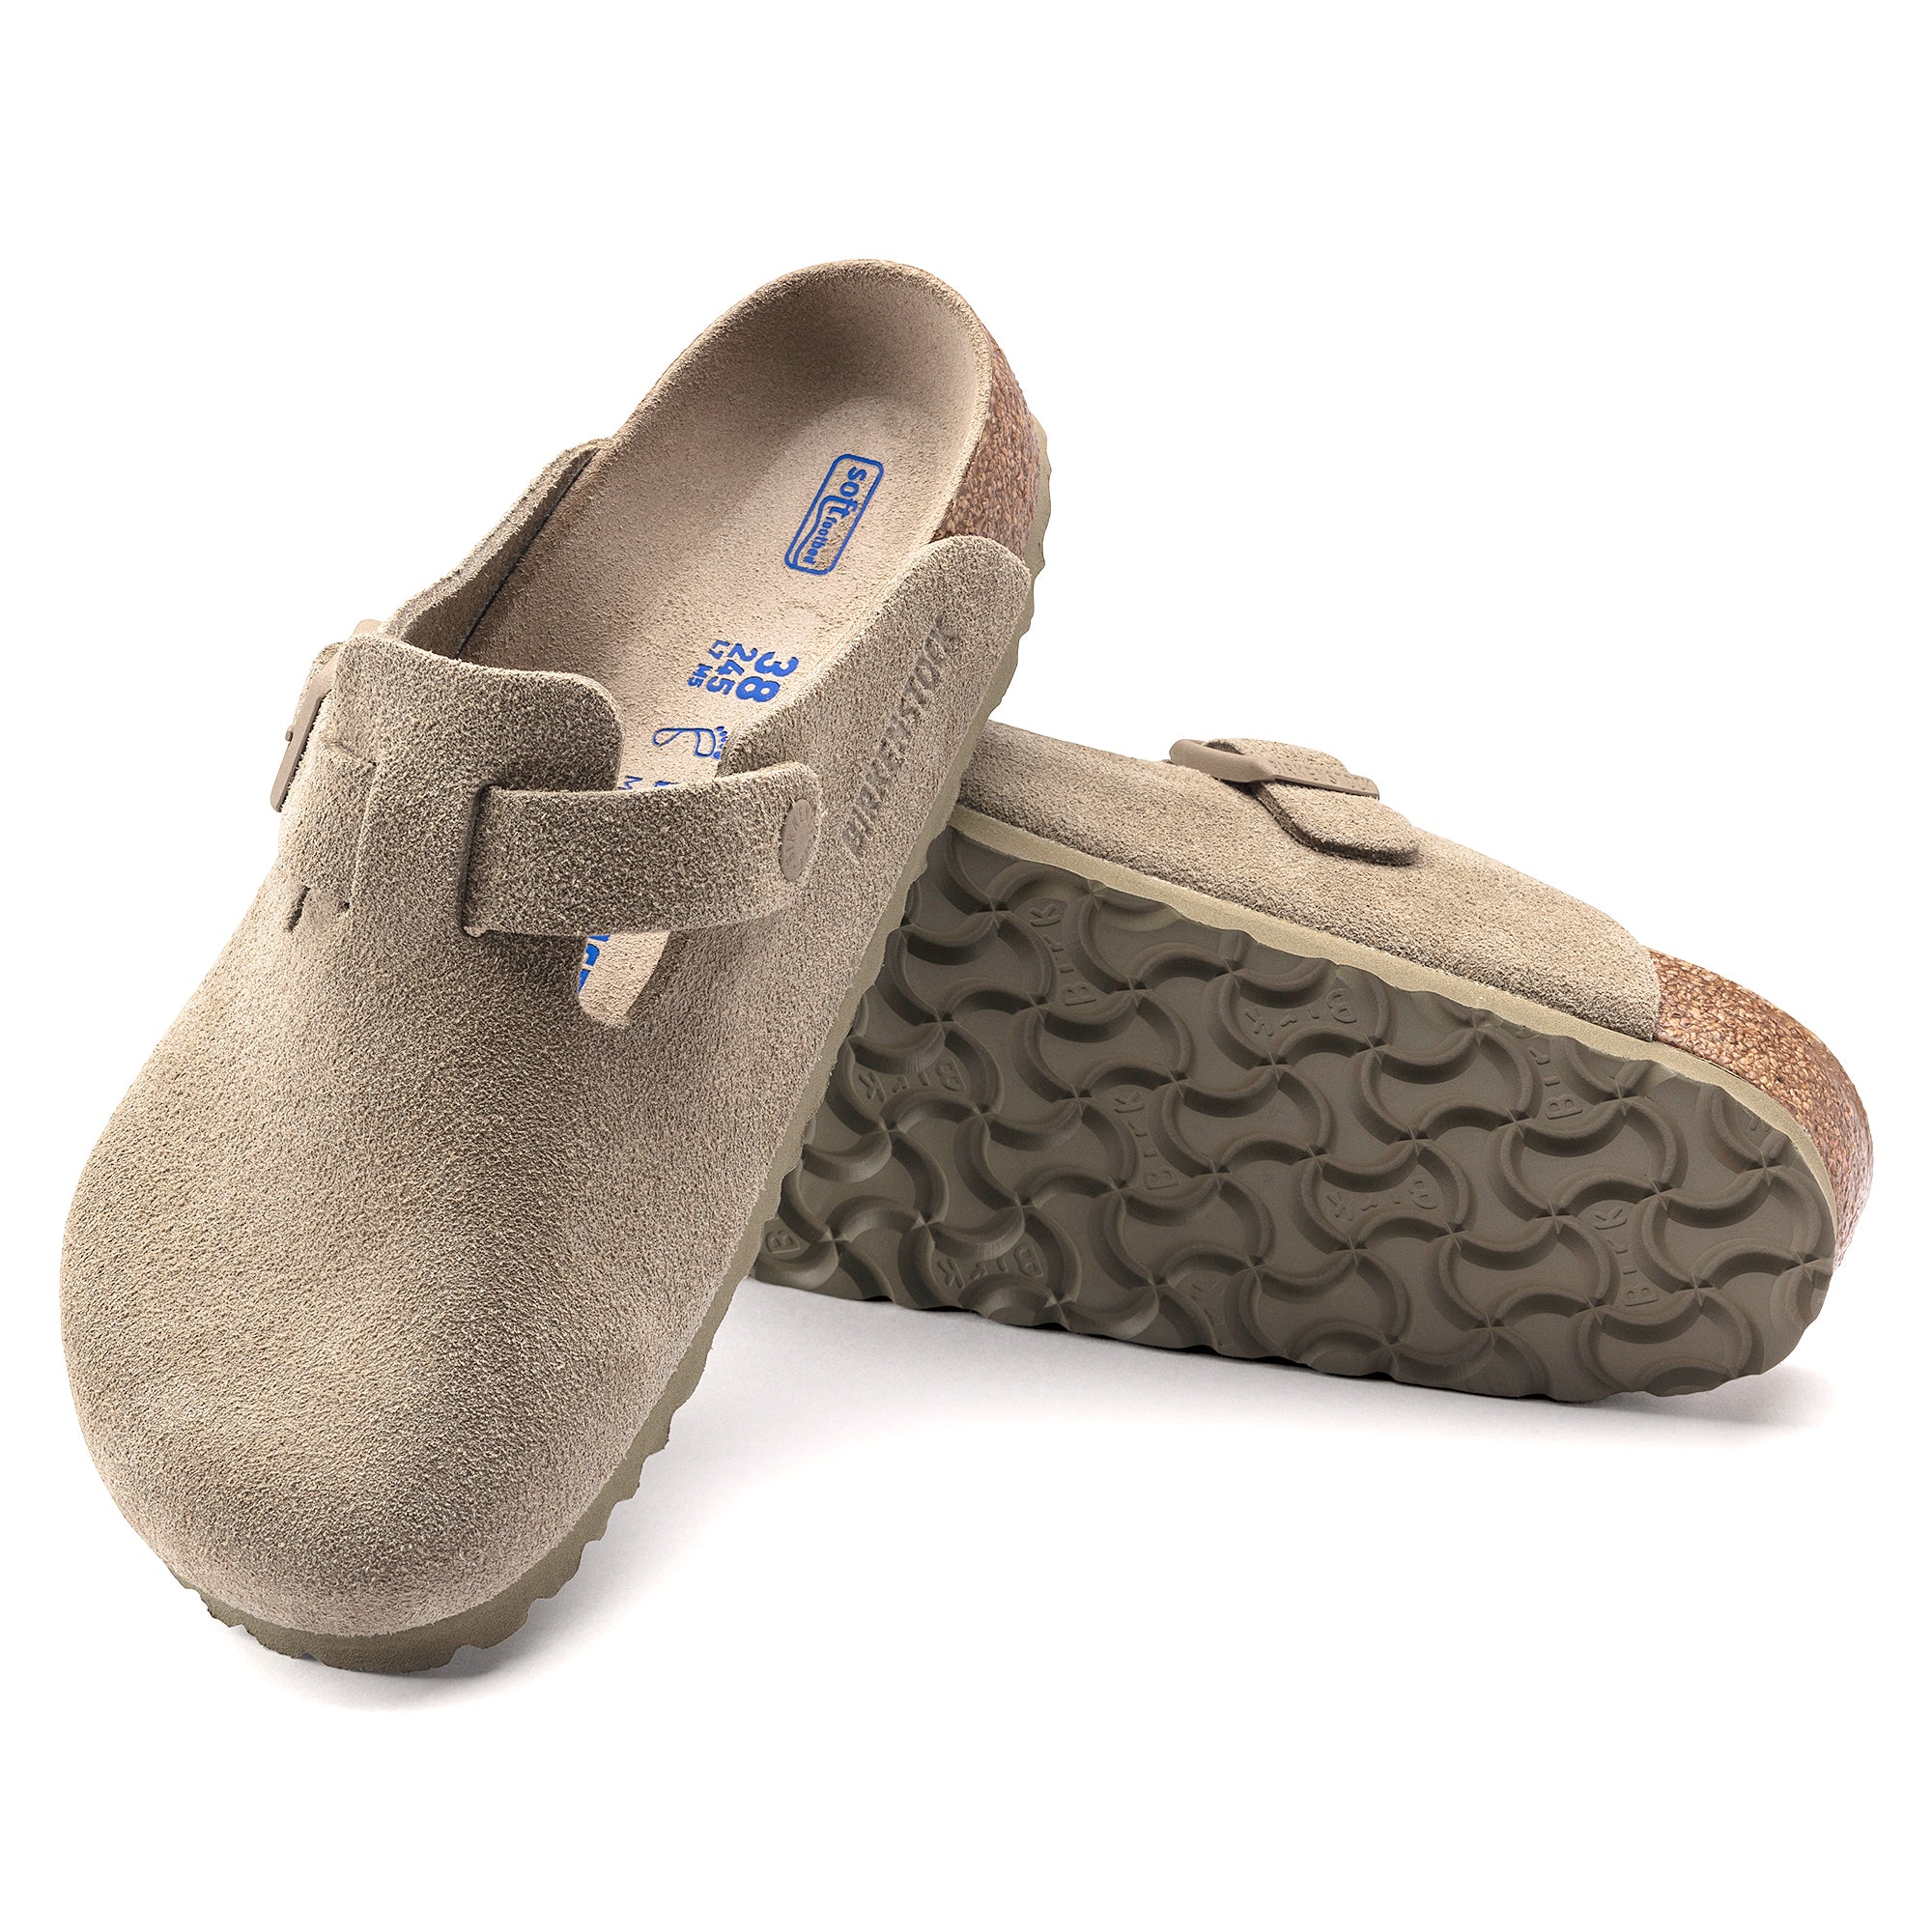 Birkenstock Boston SFB VL Sandals - Faded Khaki Suede